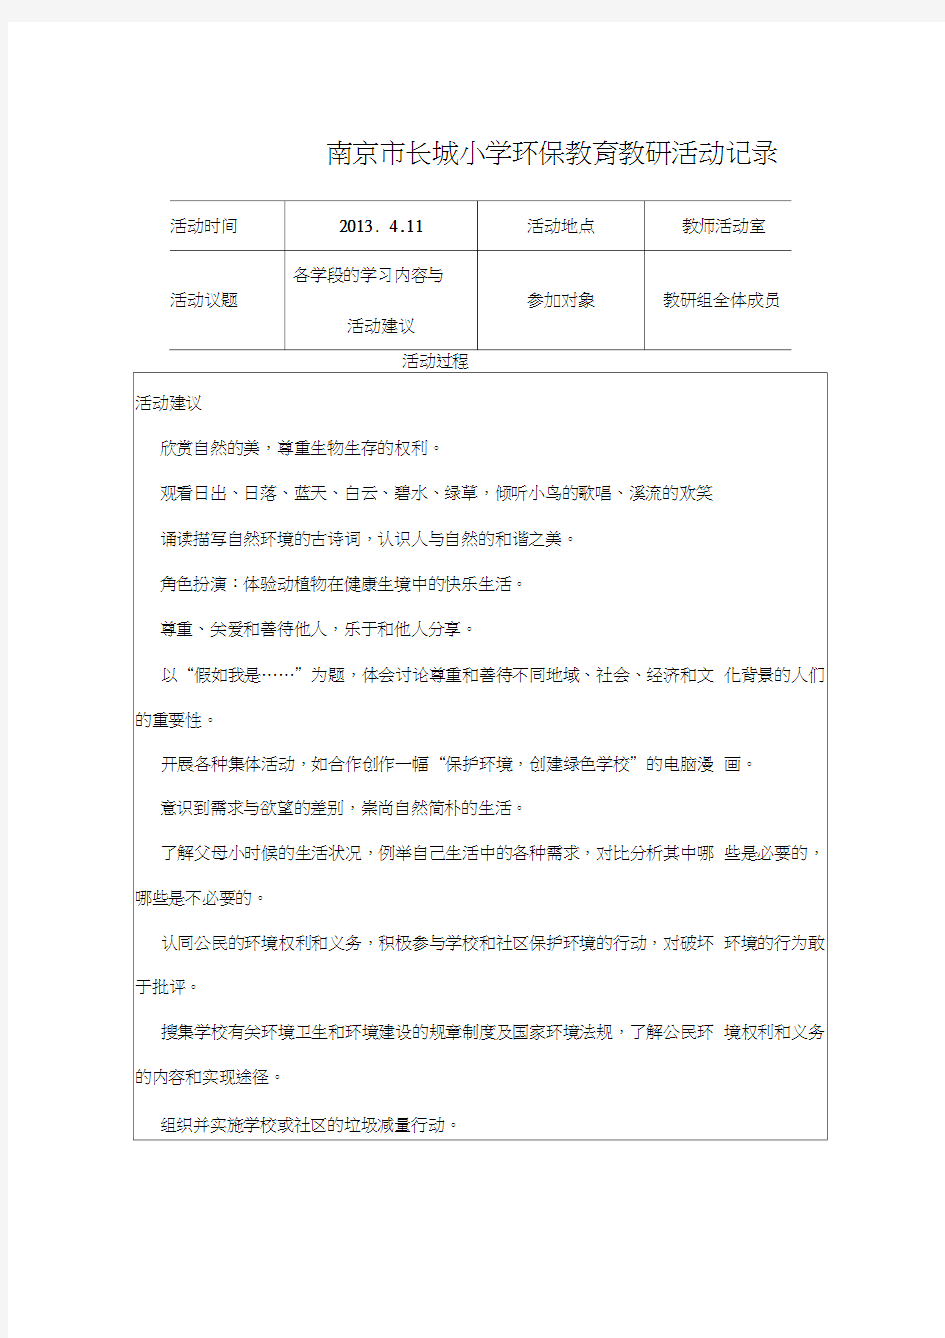 南京市长城小学环保教育教研活动记录